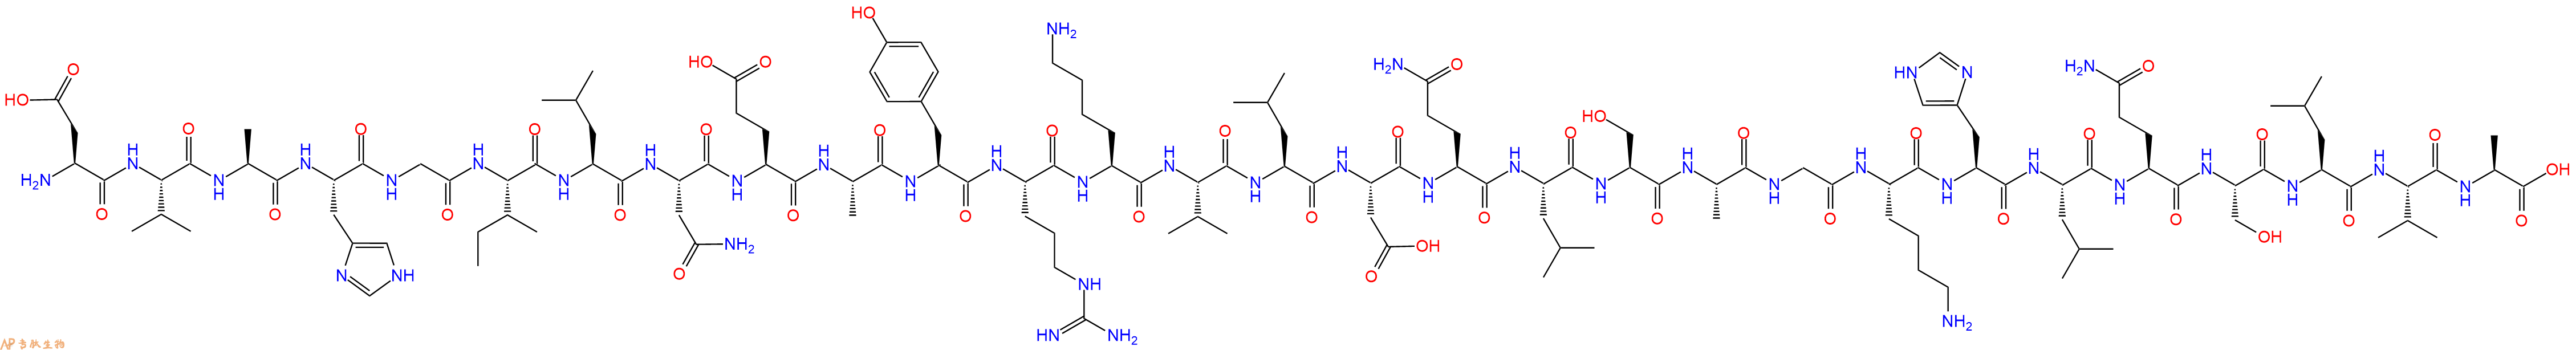 专肽生物产品PACAP-Related Peptide (PRP), human